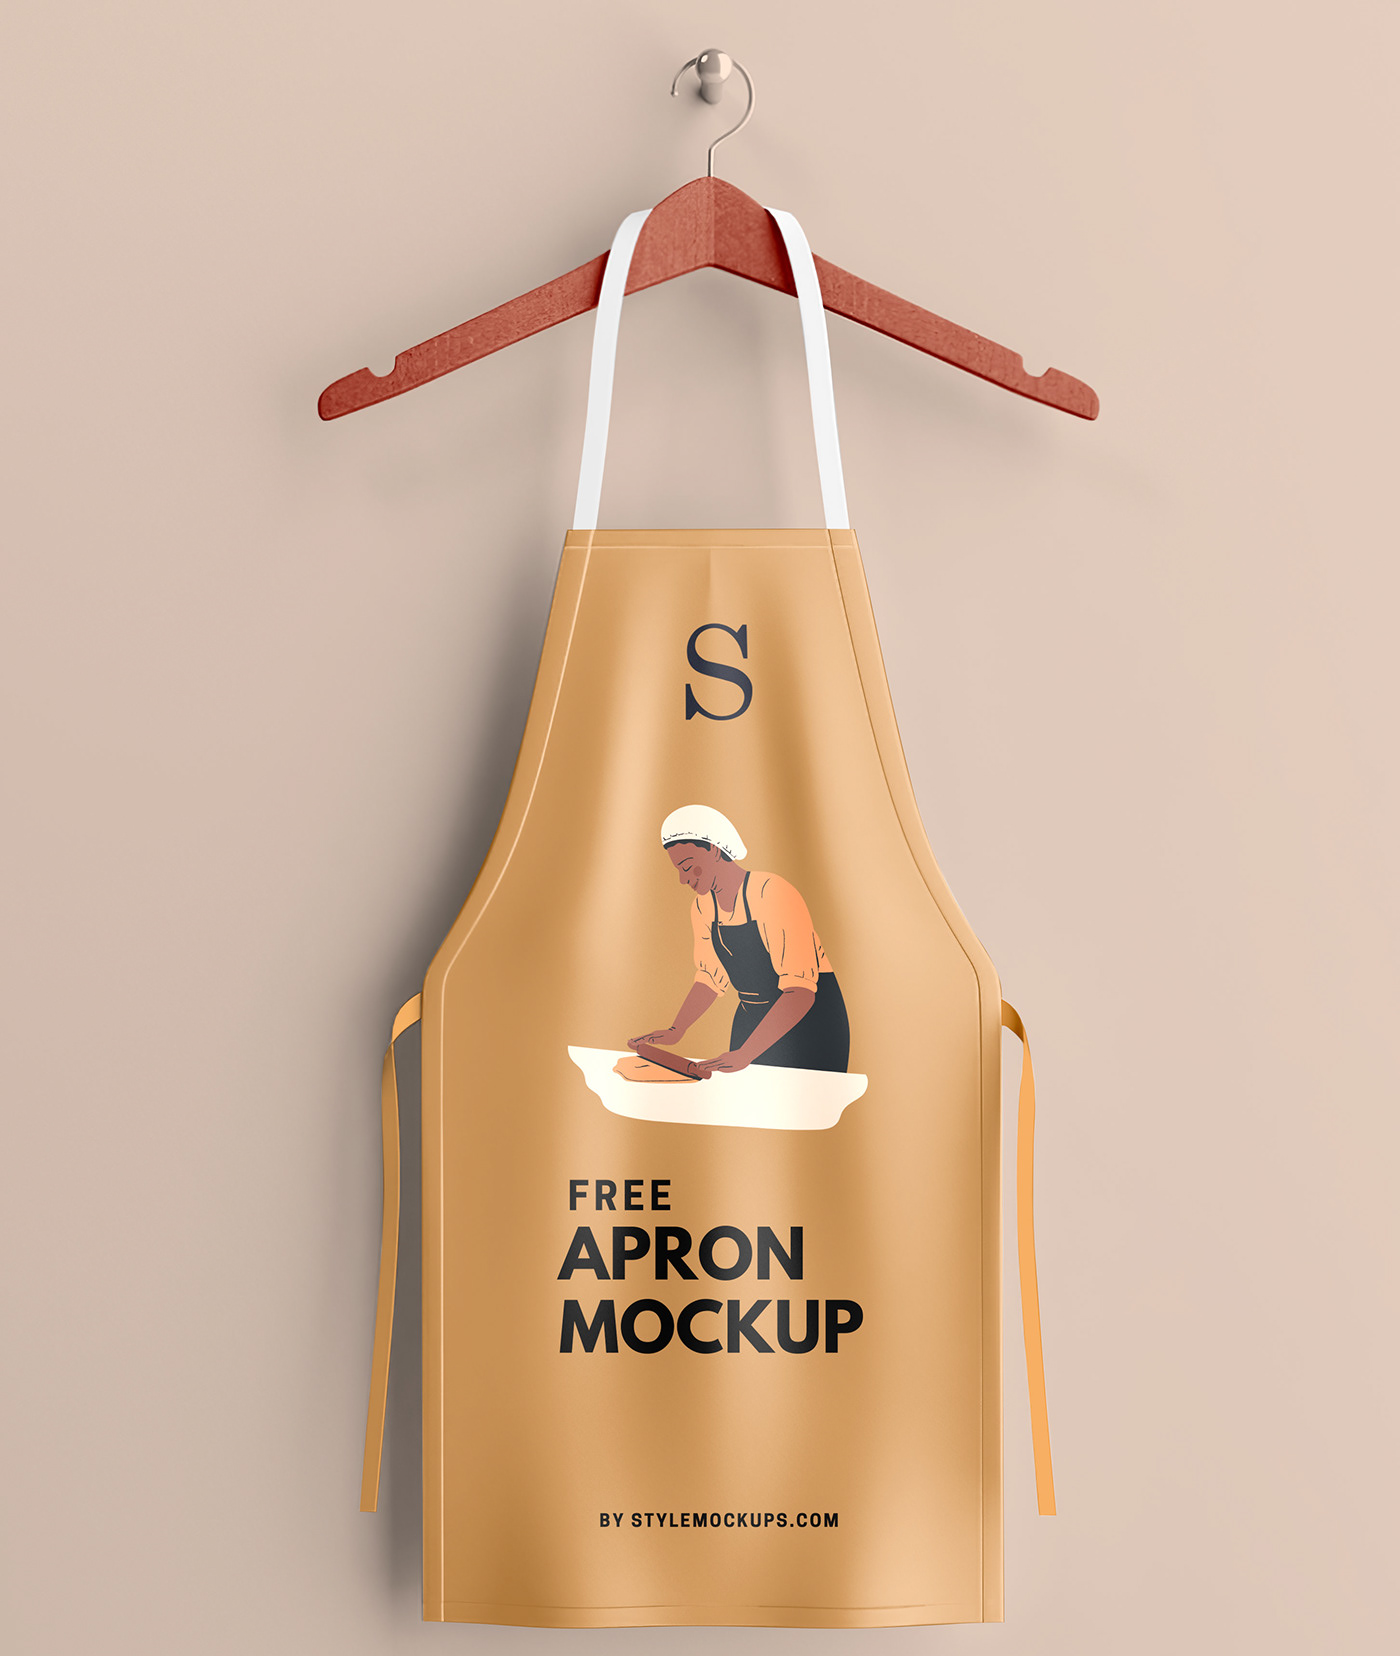 apron apron mockup branding  free FREE APRON MOCKUP free mockup  Free Mockups freebies